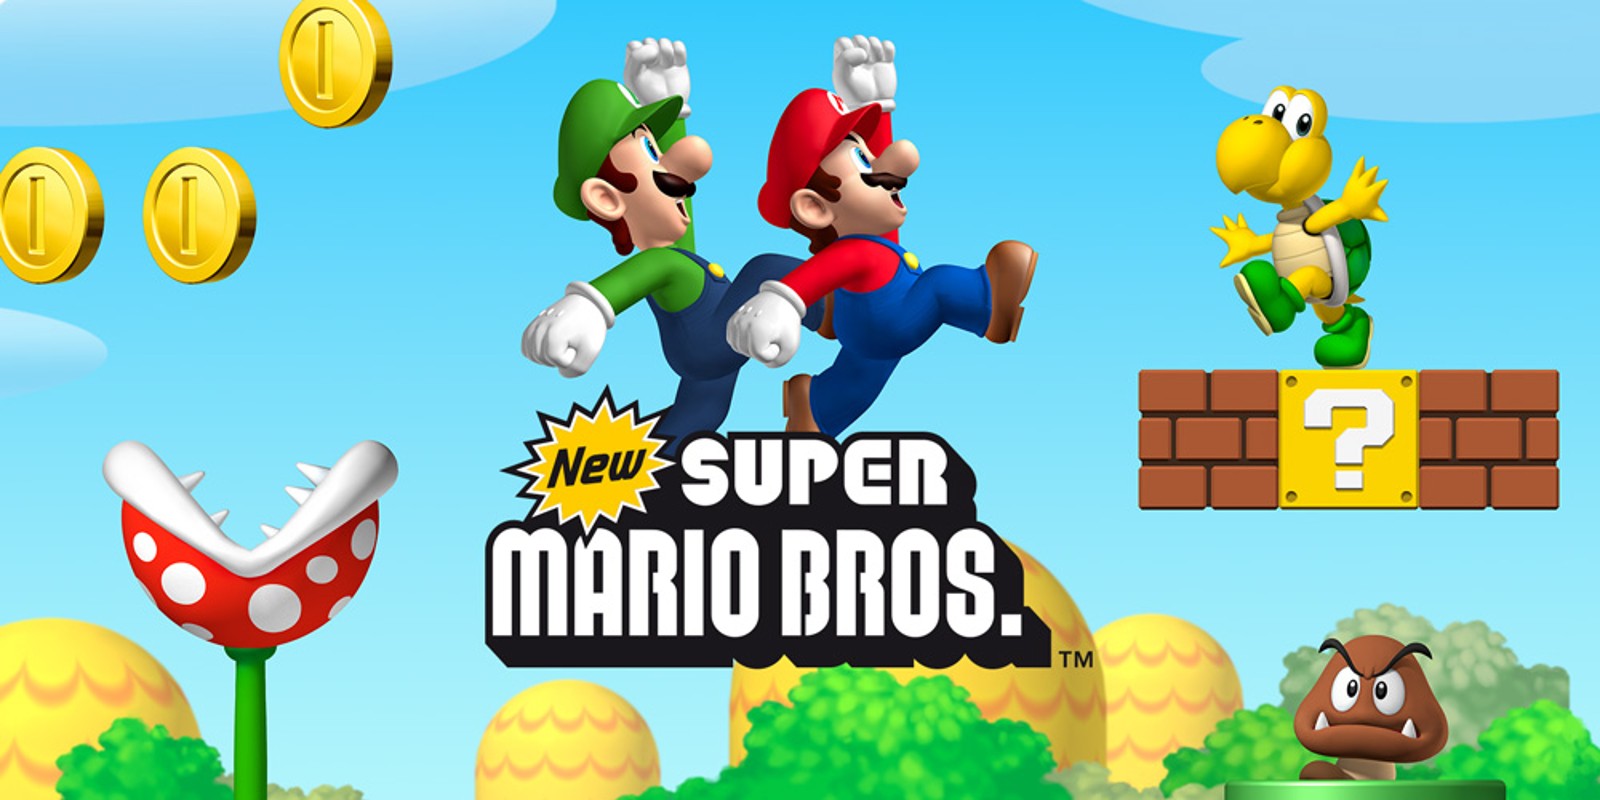 Quais os 5 melhores jogos da franquia Mario, segundo a crítica